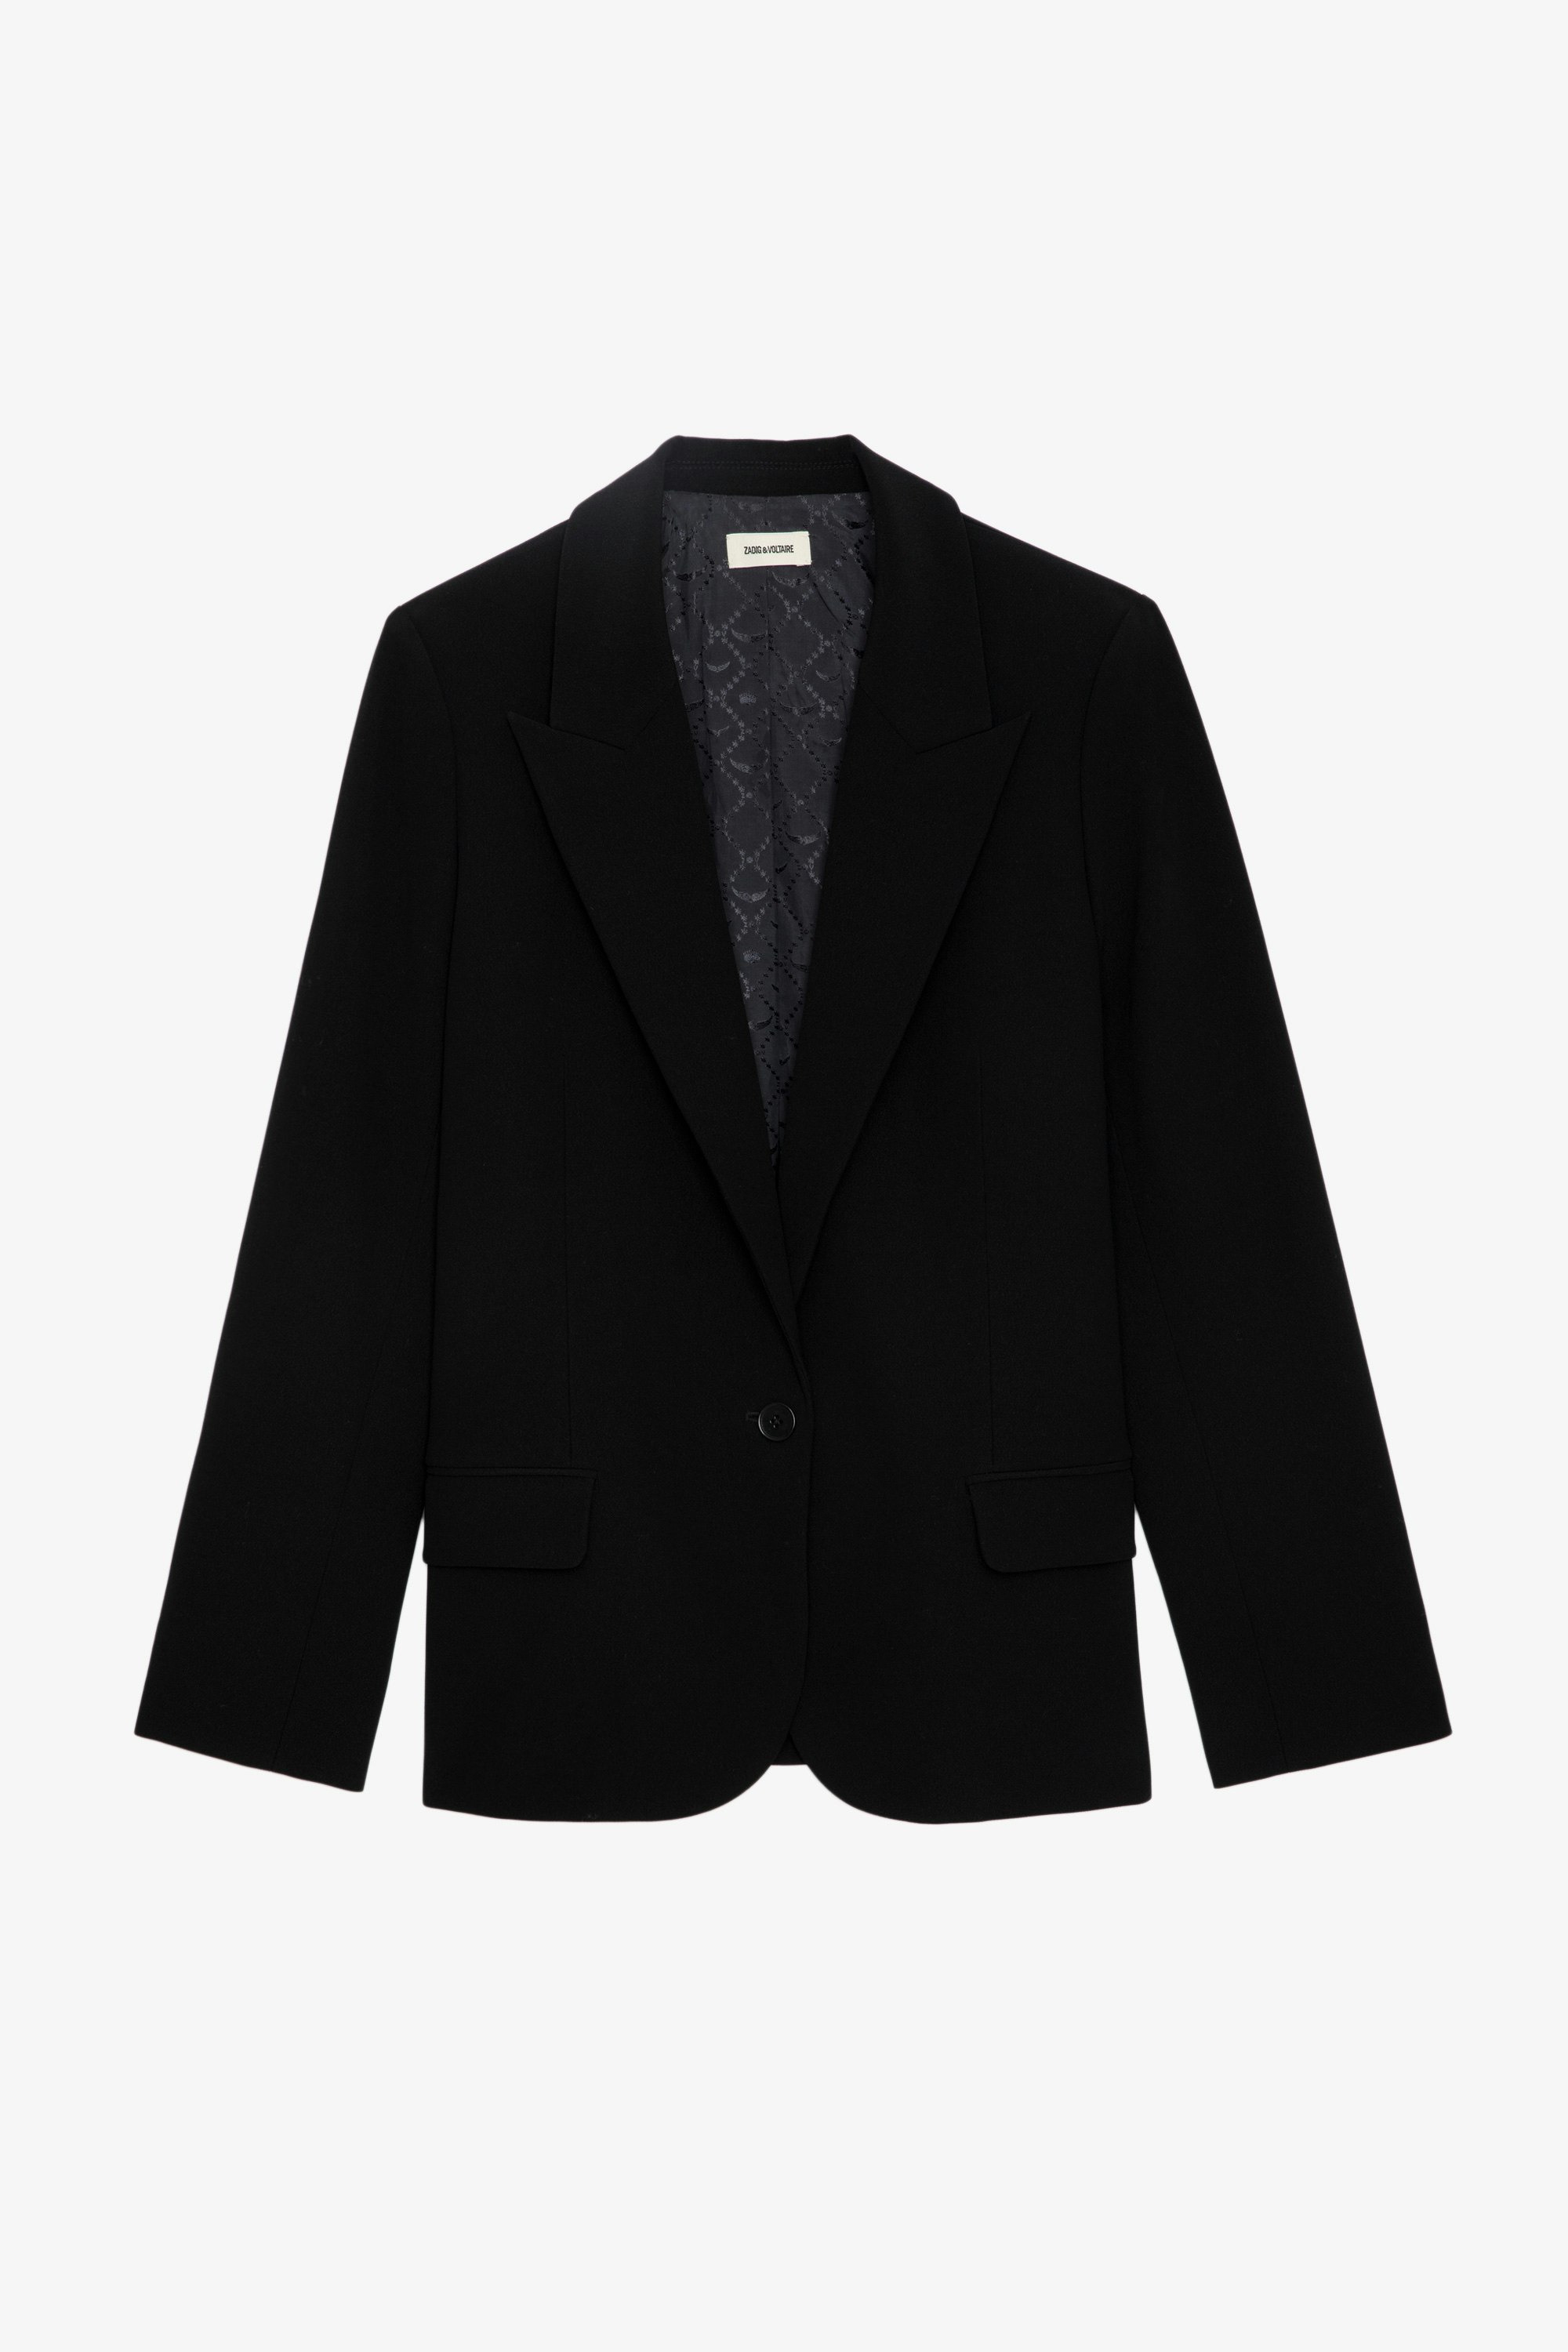 Blazer Voyage - Veste blazer noire oversize à col en pointe, fermeture boutonnée et poches.